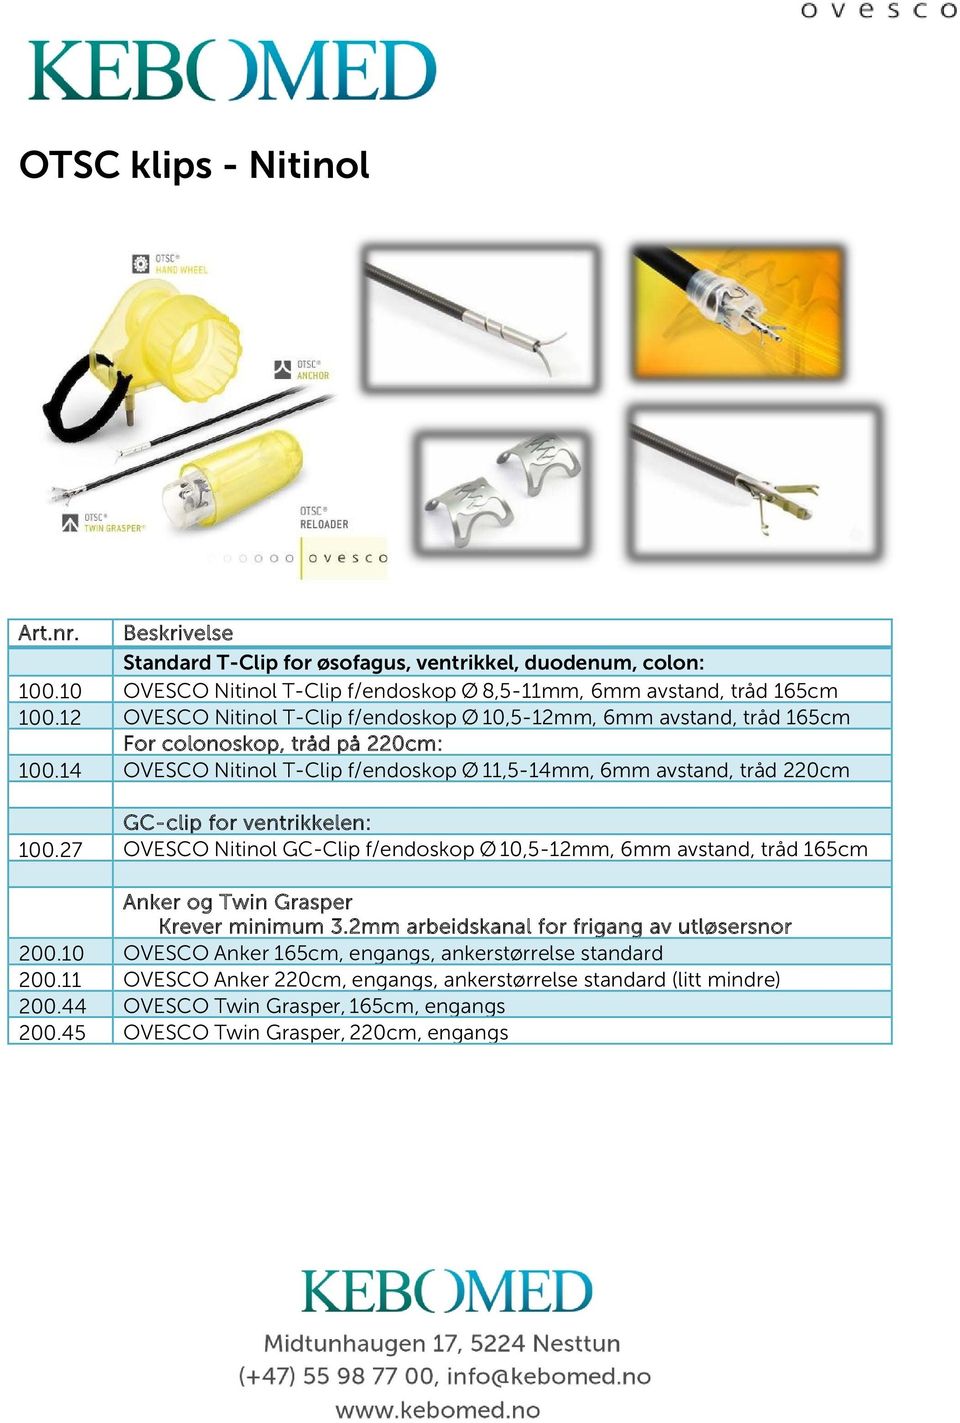 14 OVESCO Nitinol T-Clip f/endoskop Ø 11,5-14mm, 6mm avstand, tråd 220cm GC-clip for ventrikkelen: 100.